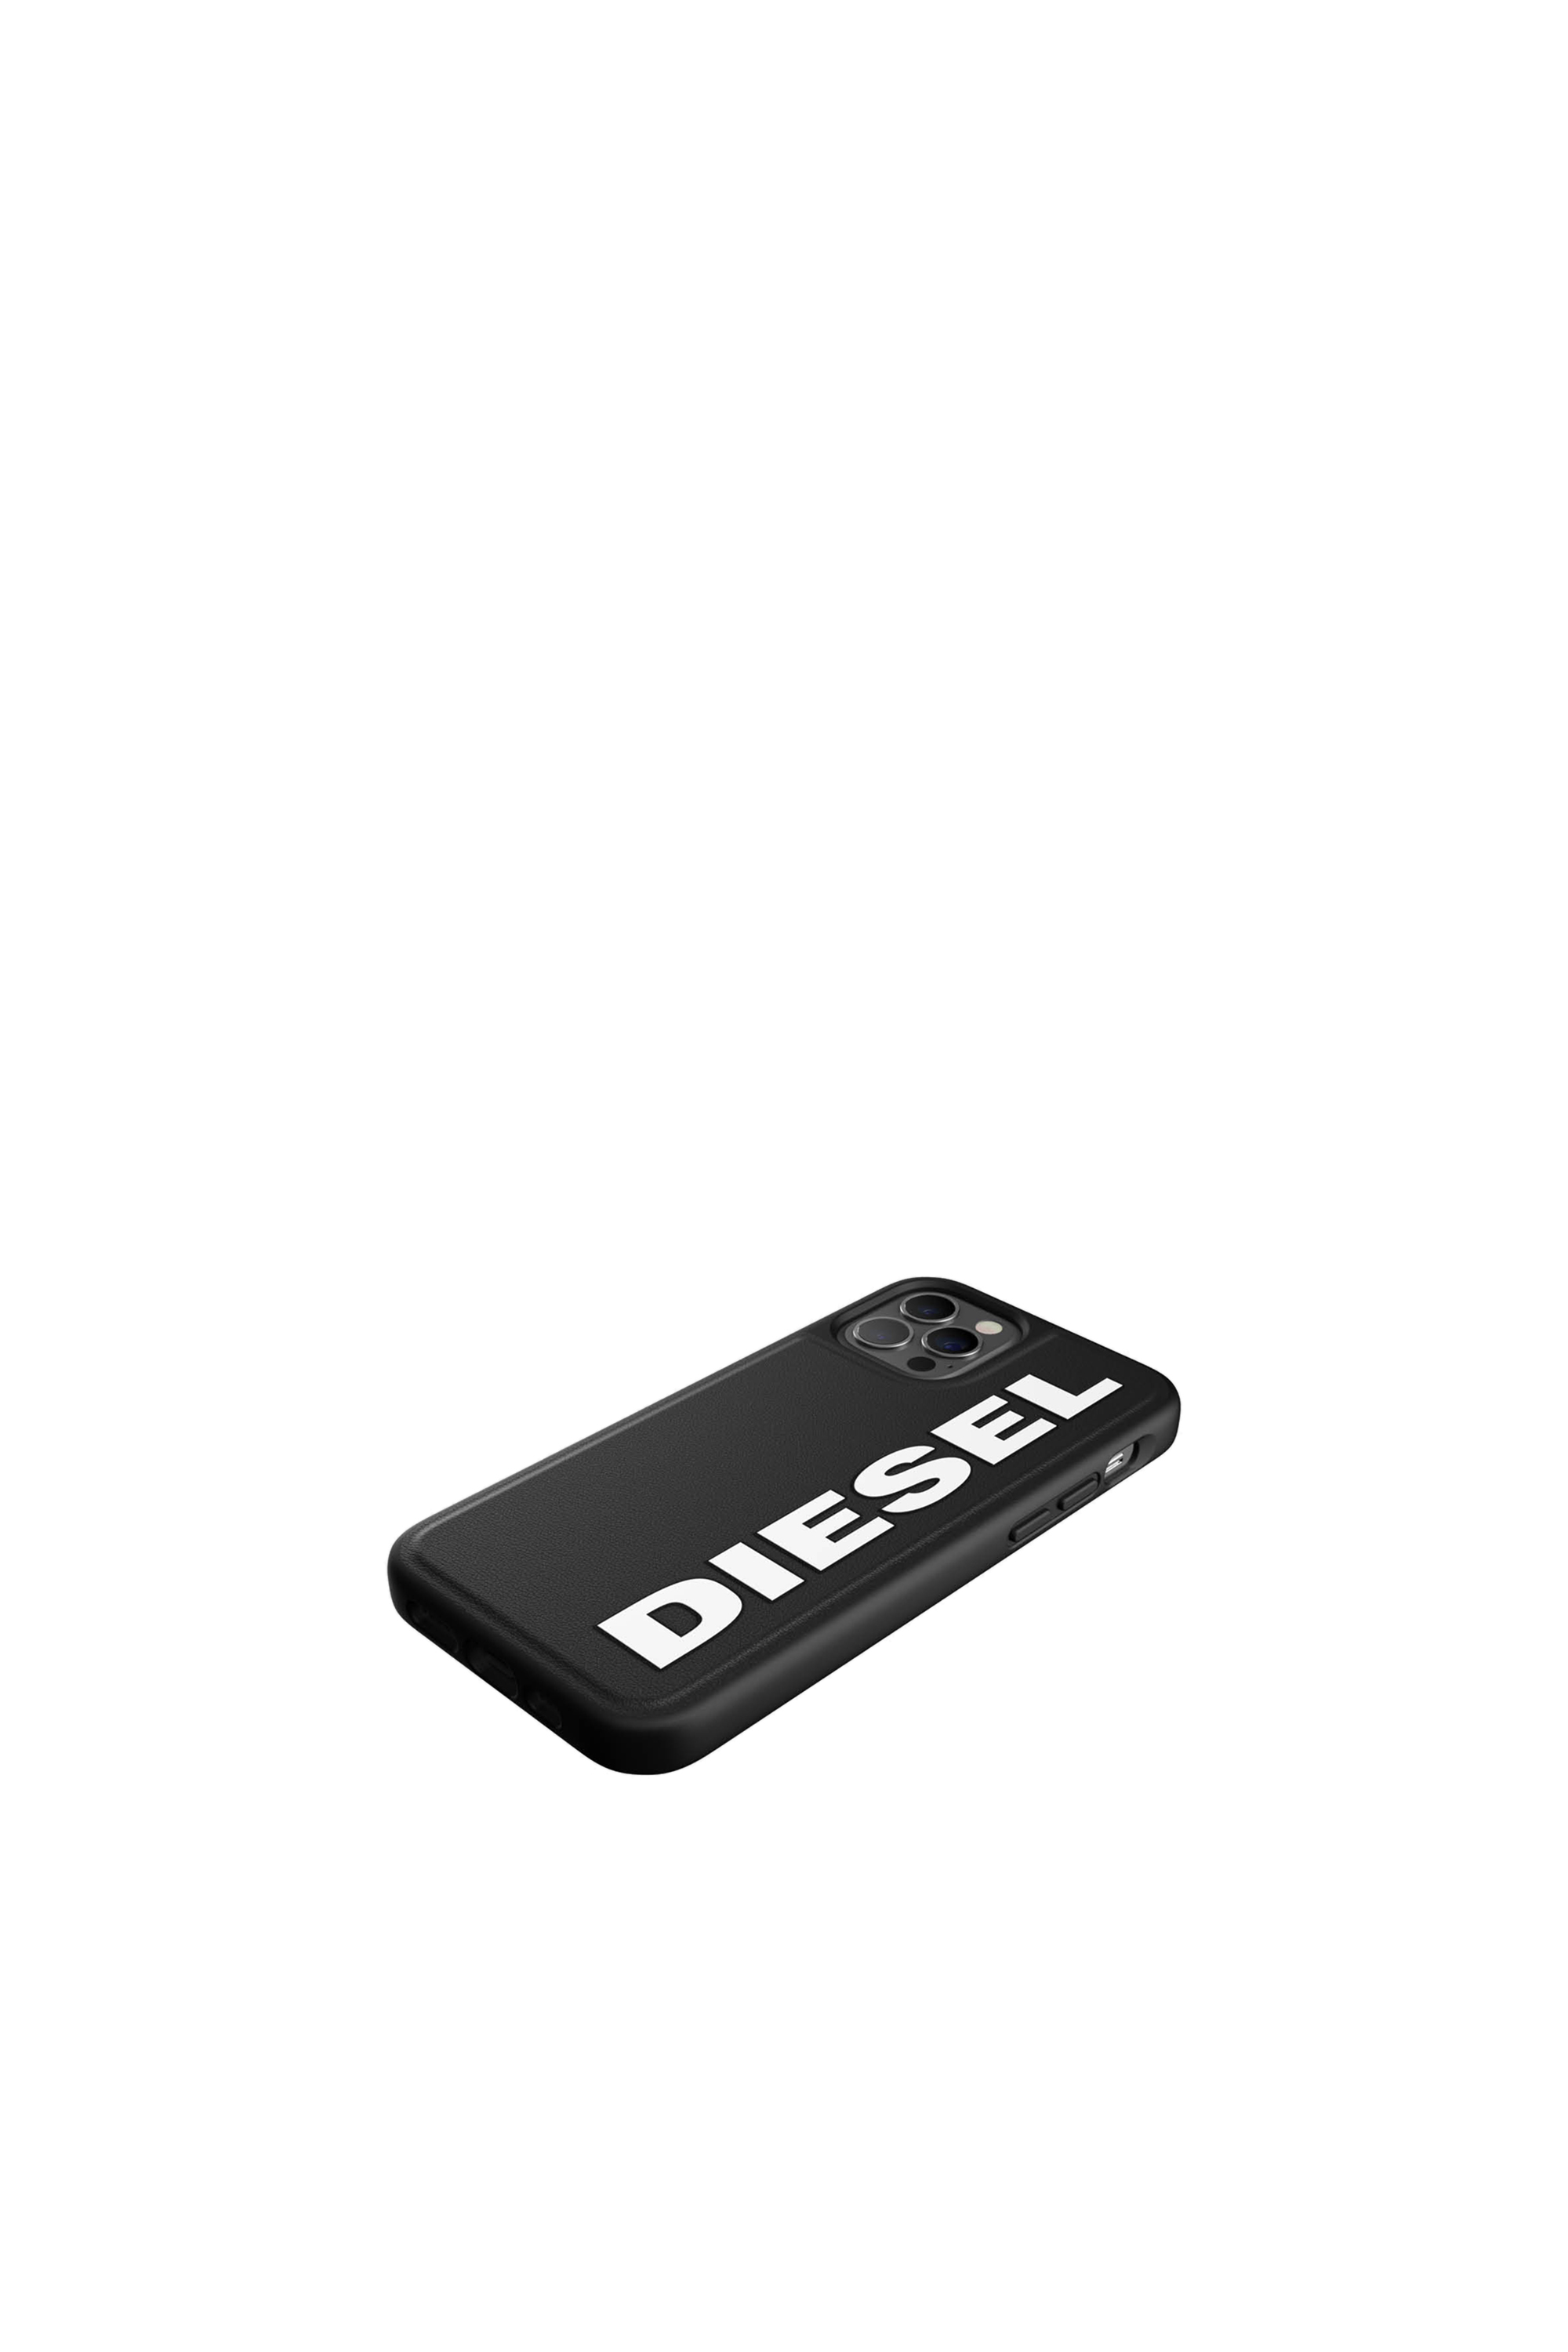 Diesel - 42492, Negro - Image 4